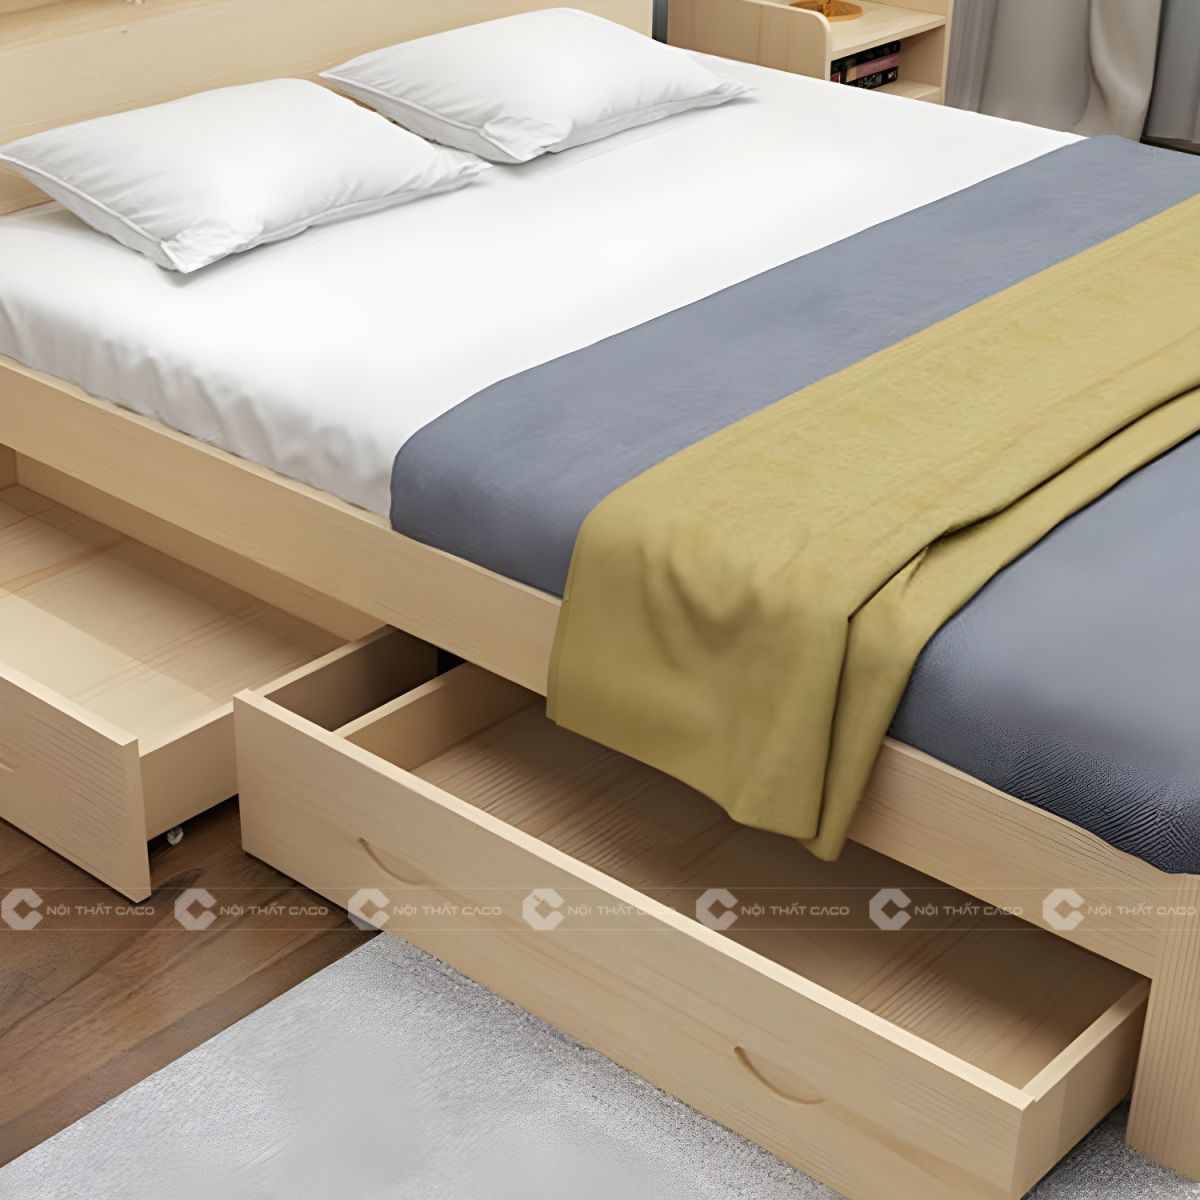 Giường ngủ gỗ tự nhiên có hộc kéo thông minh